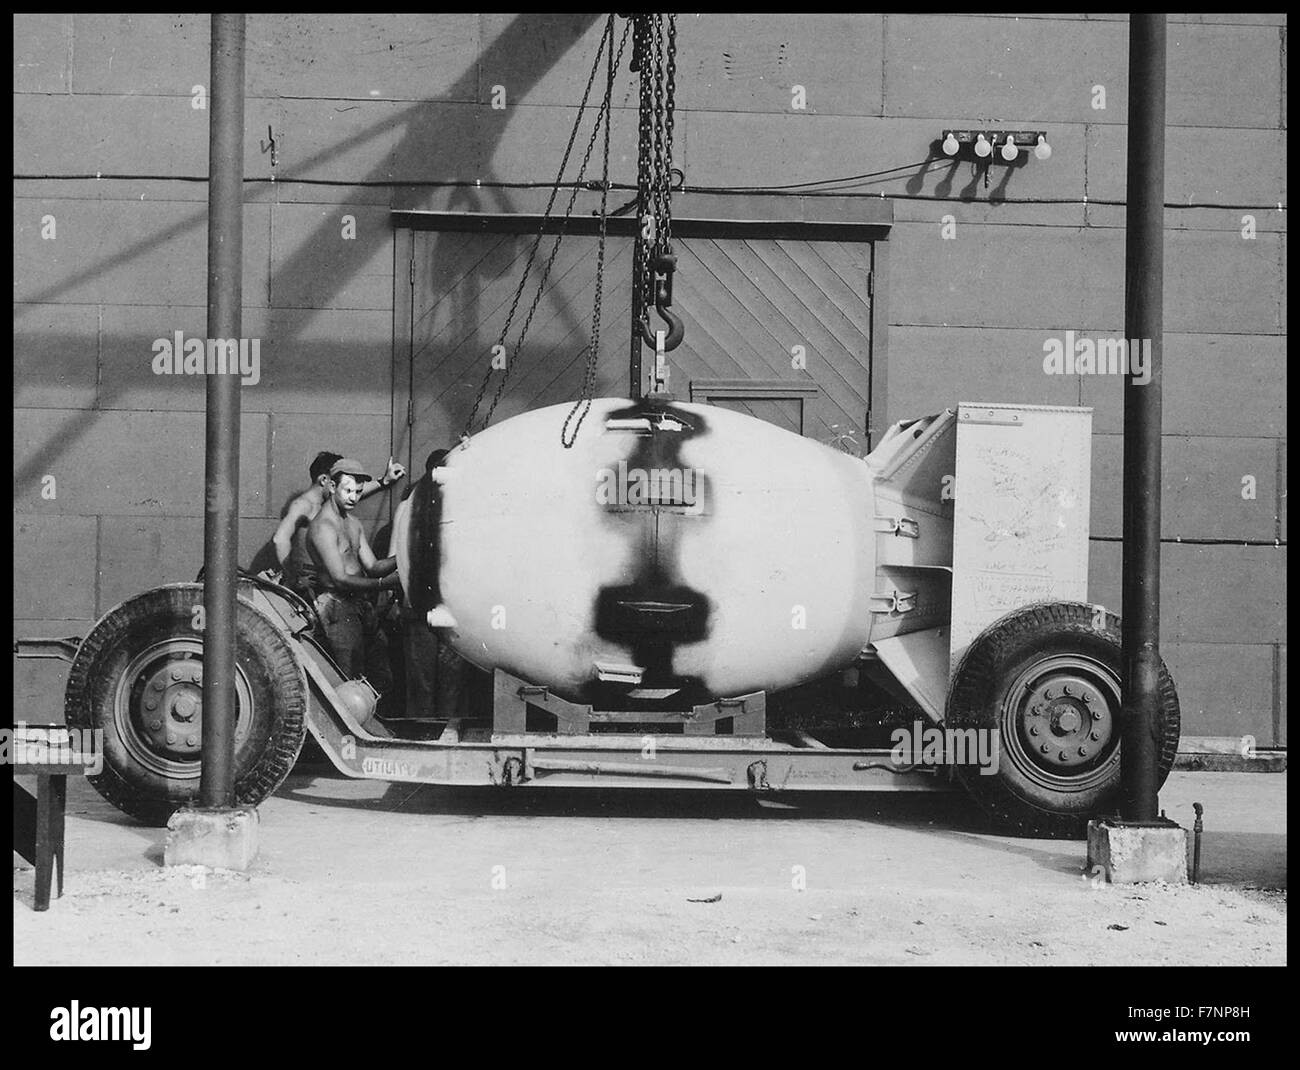 Fat Man sul carrello di trasporto, isola Tinian, 1945 "Fat Man' è stato il nome in codice per il tipo di bomba atomica che è stata fatta esplodere oltre la città giapponese di Nagasaki dagli Stati Uniti il 9 agosto 1945. Foto Stock